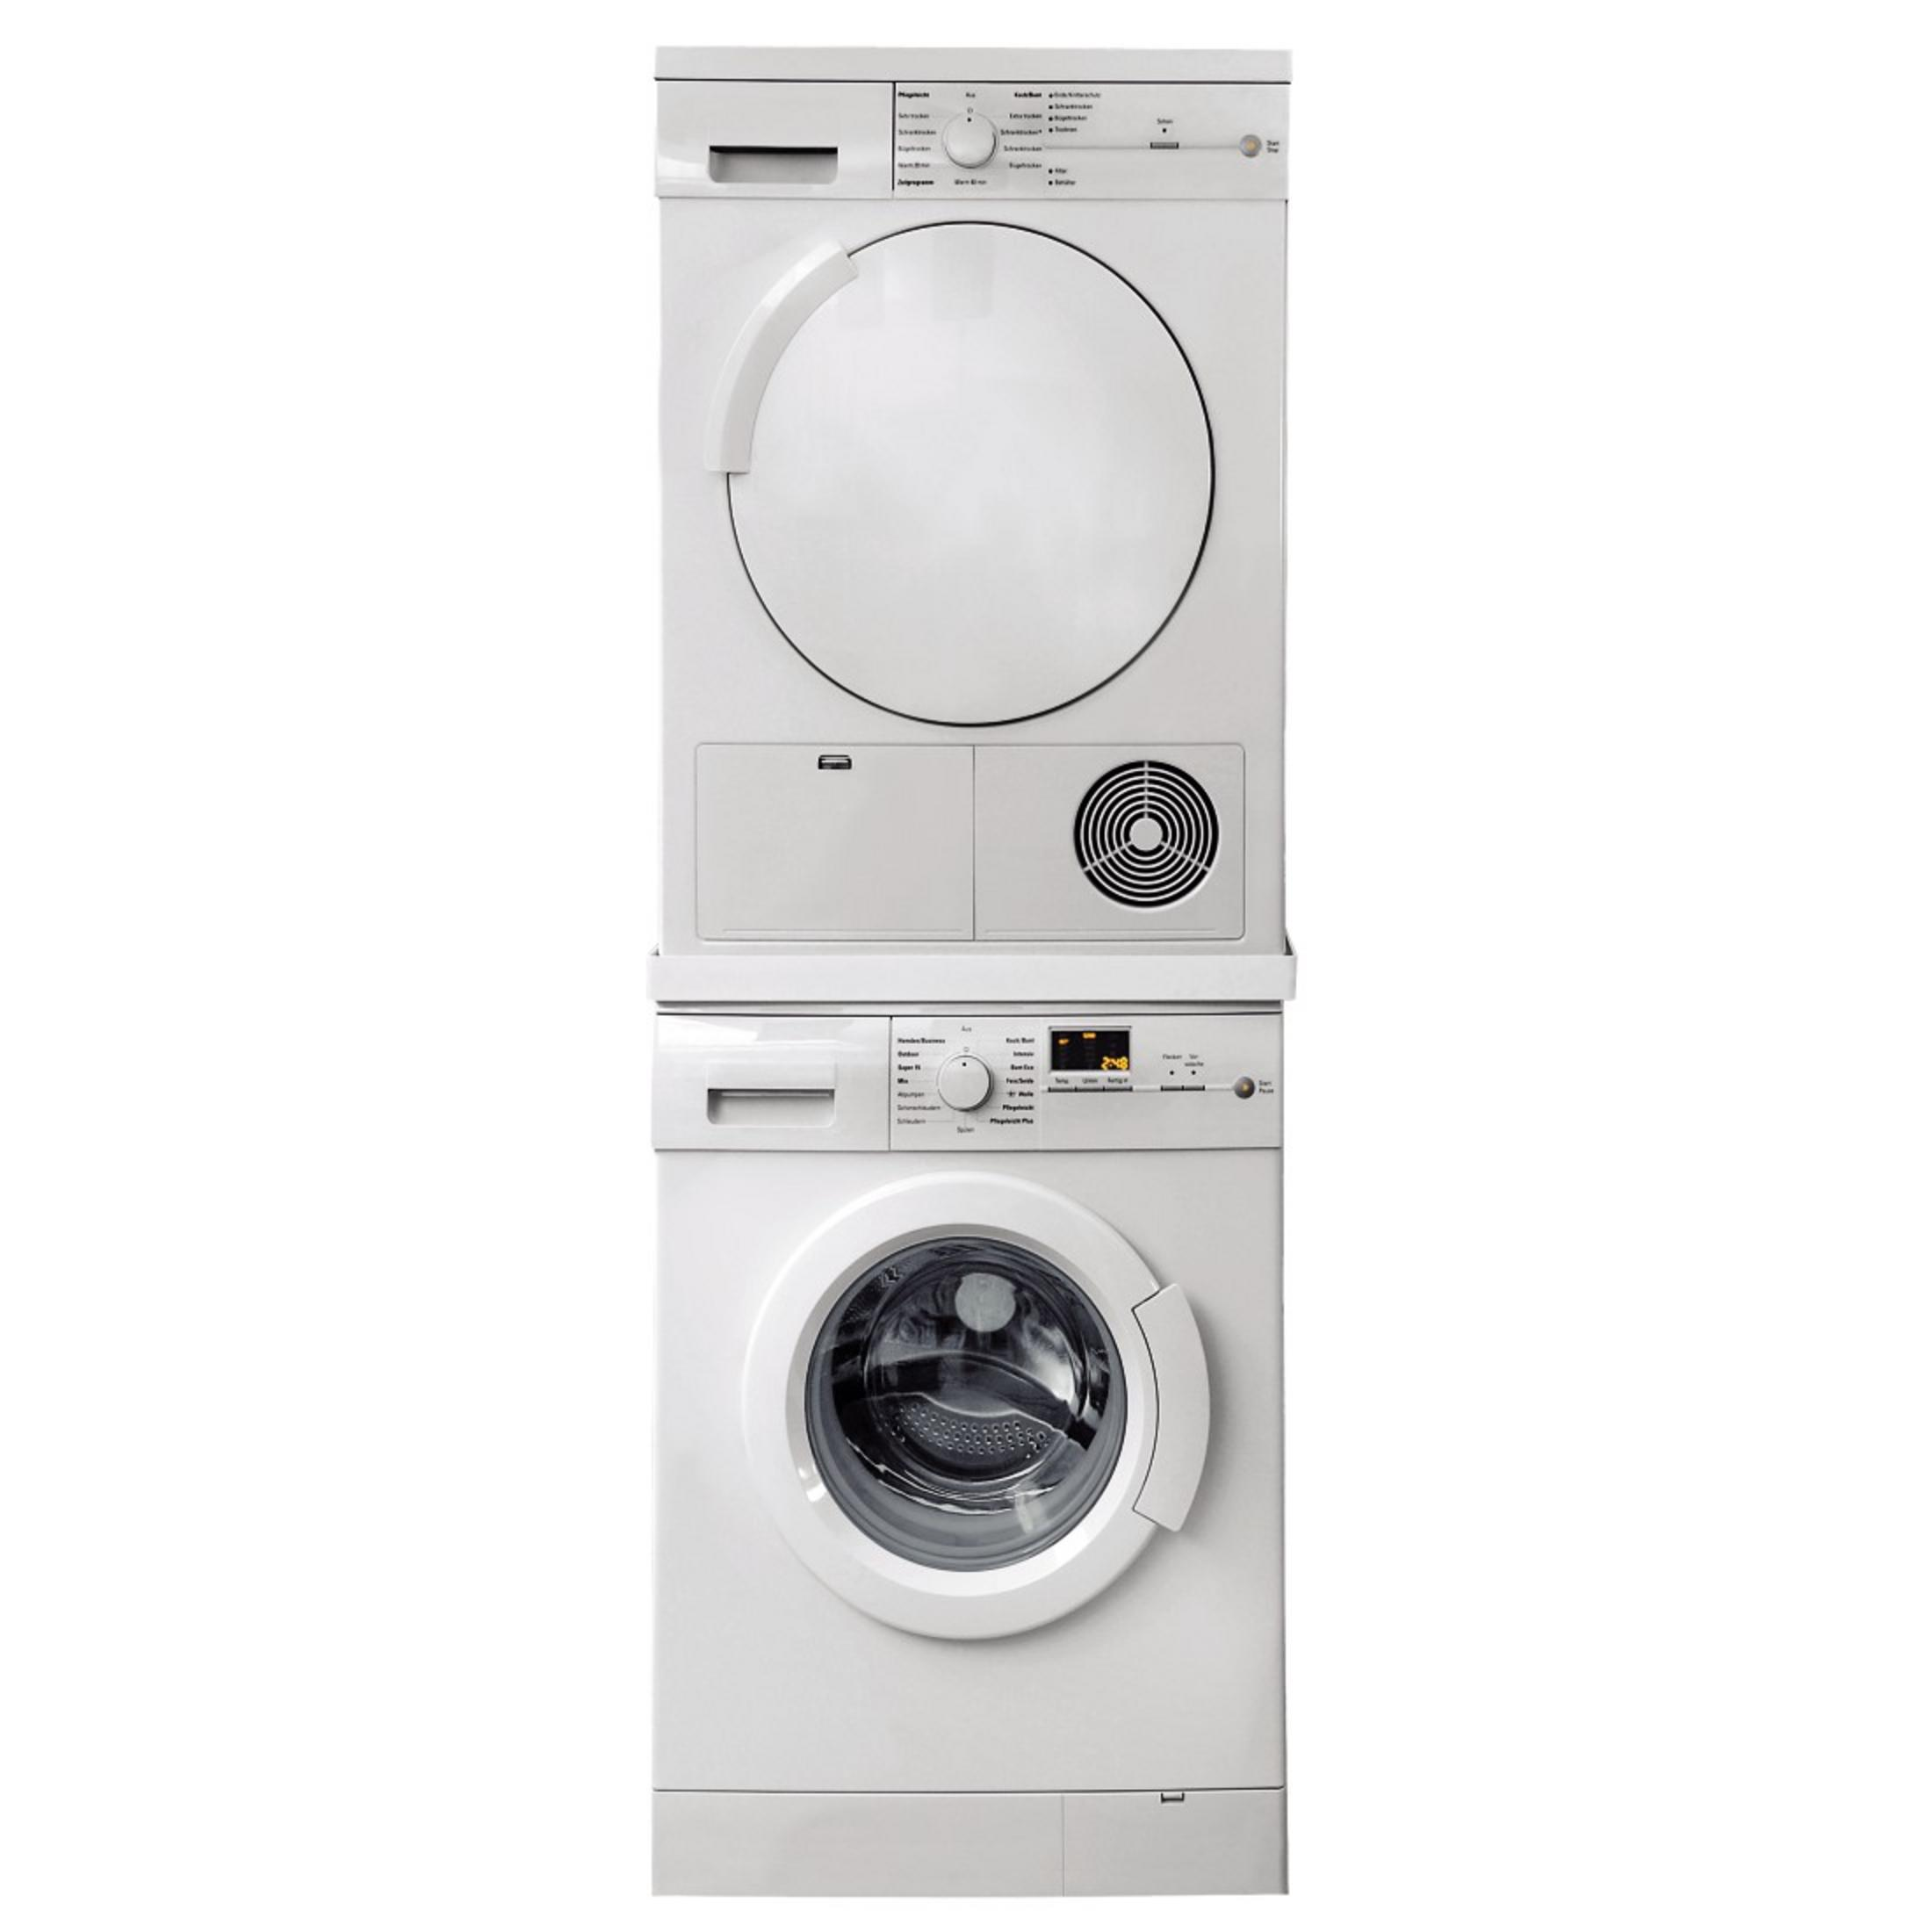 XAVAX 110815 ZWISCHENBAUSATZ :1/SCH Waschmaschine/Trockner für Zwischenbausatz mm) (600